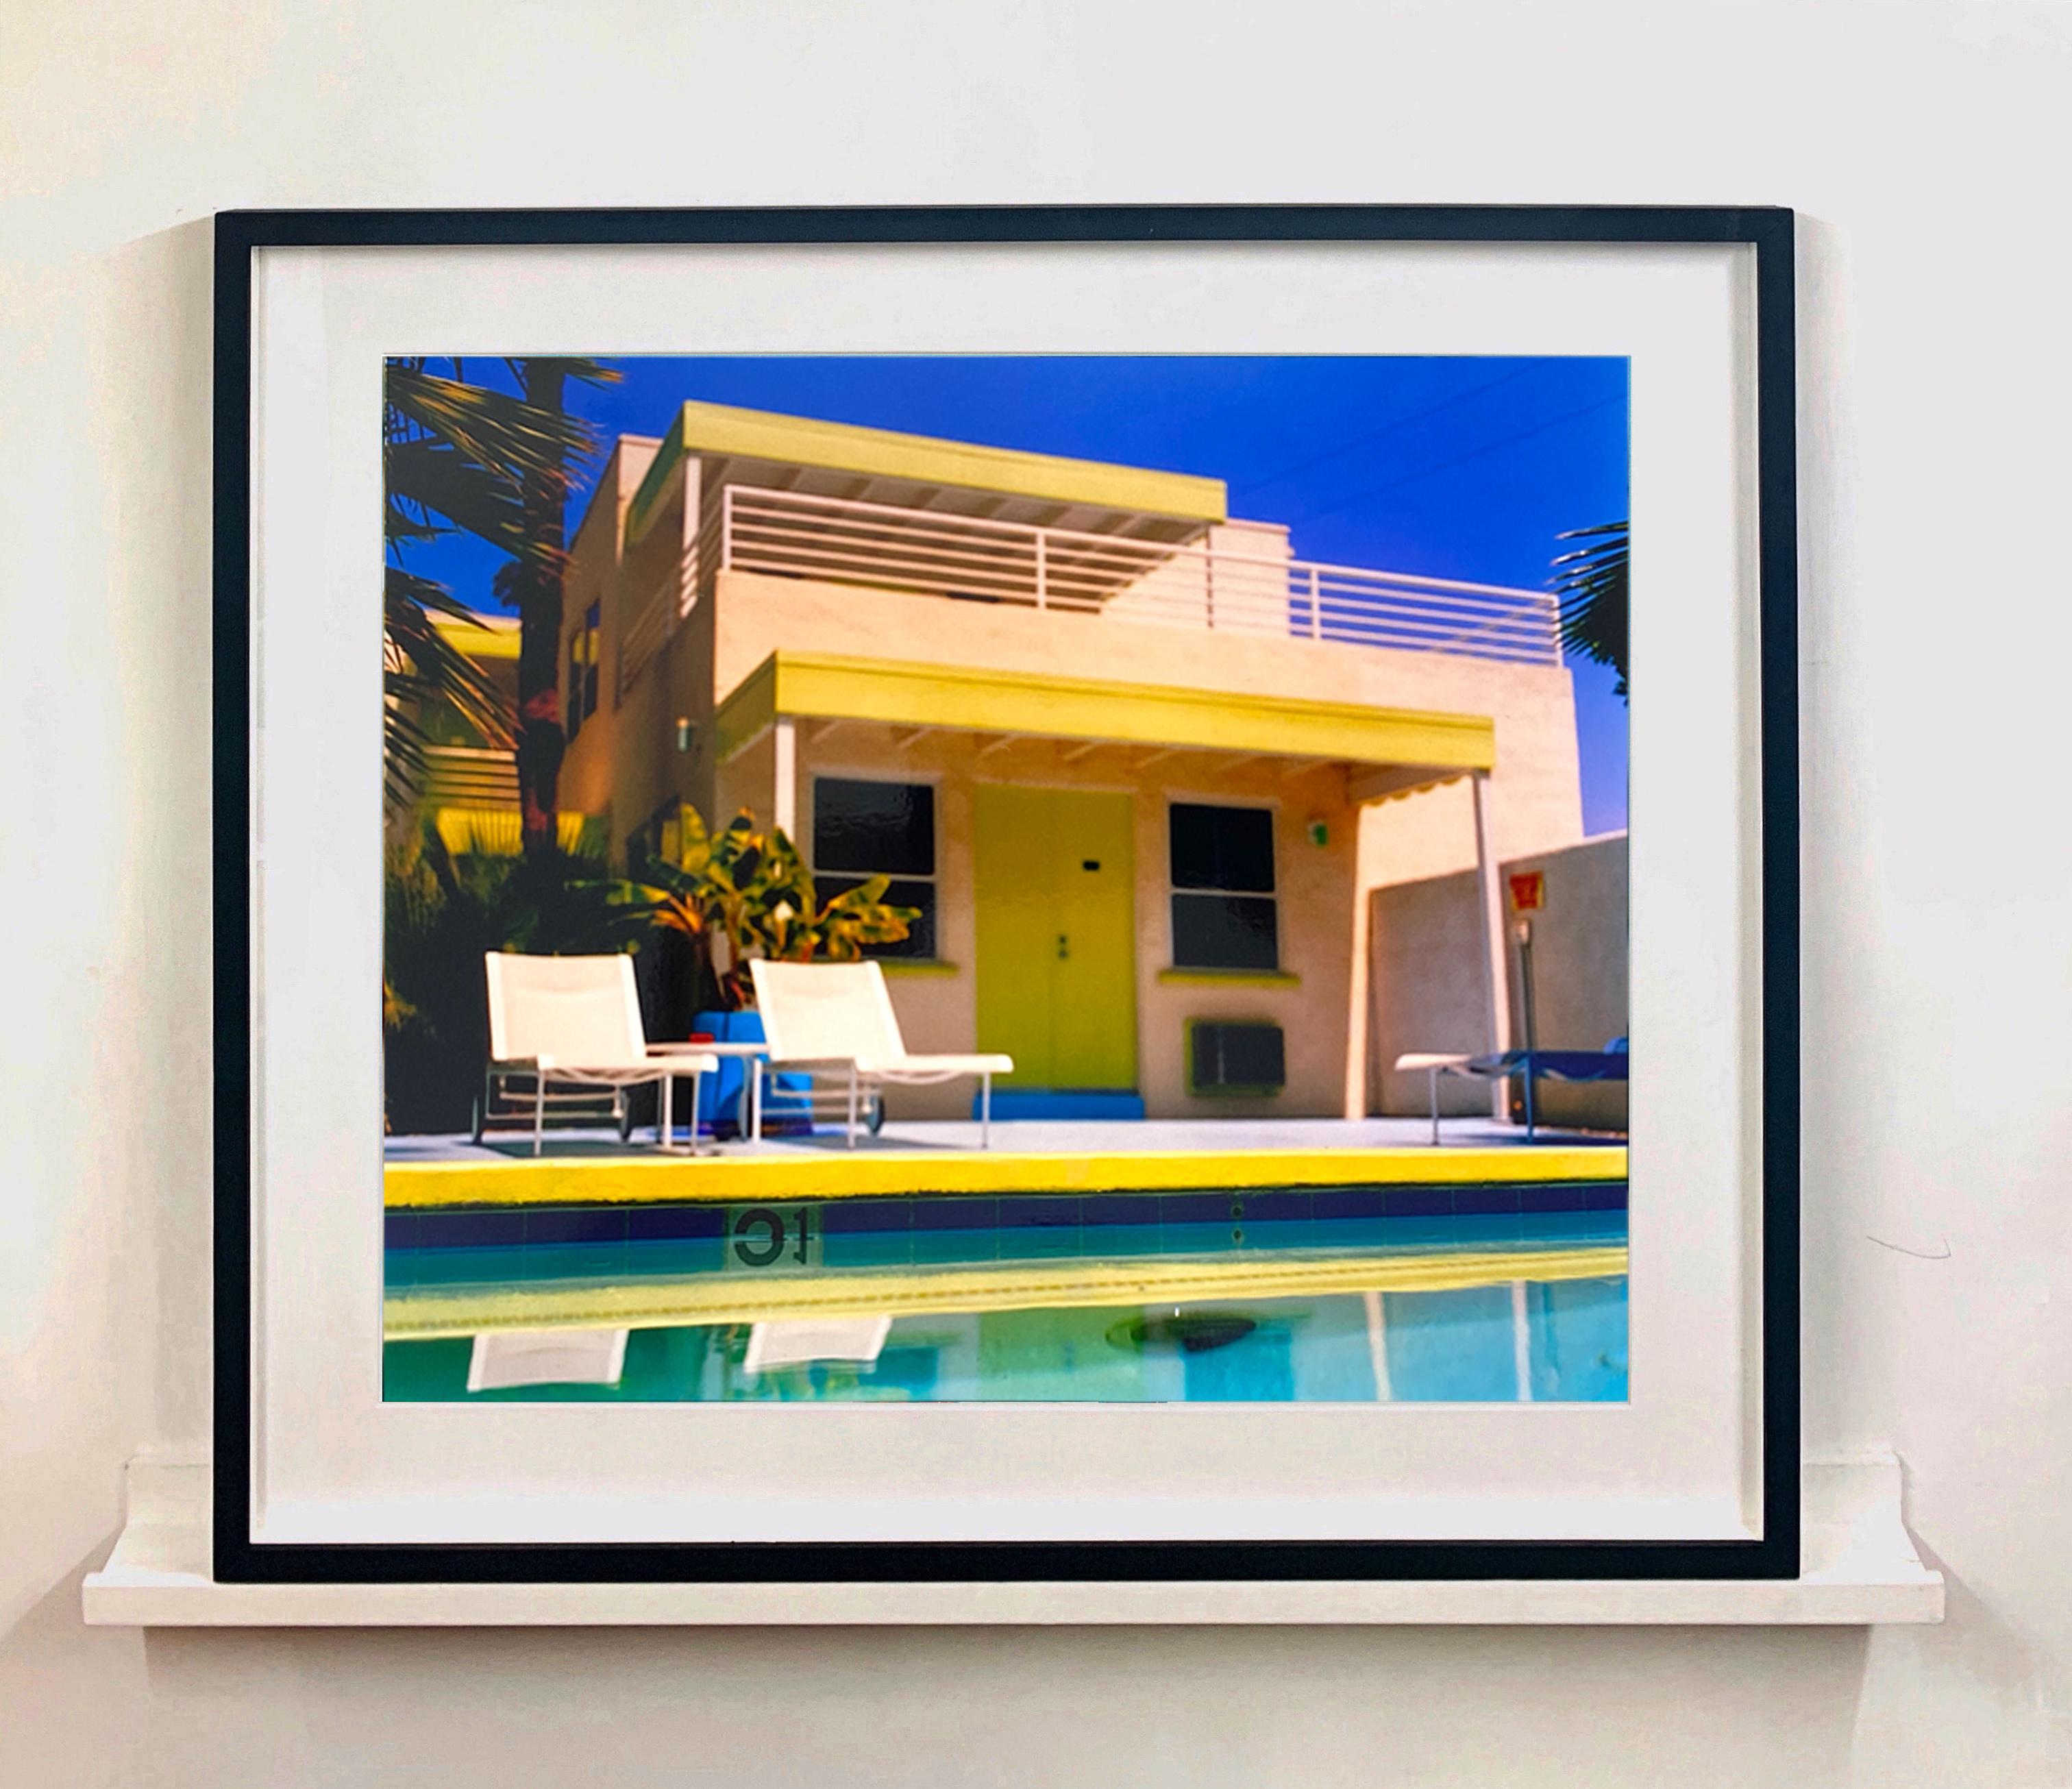 Palm Springs Pool Side, photographie de Richard Heeps prise à Ballantines Movie Coloni. Cette œuvre d'art capture l'architecture classique du milieu du siècle de Palm Springs sur fond de ciel bleu saturé et de piscine fraîche avec des accents de